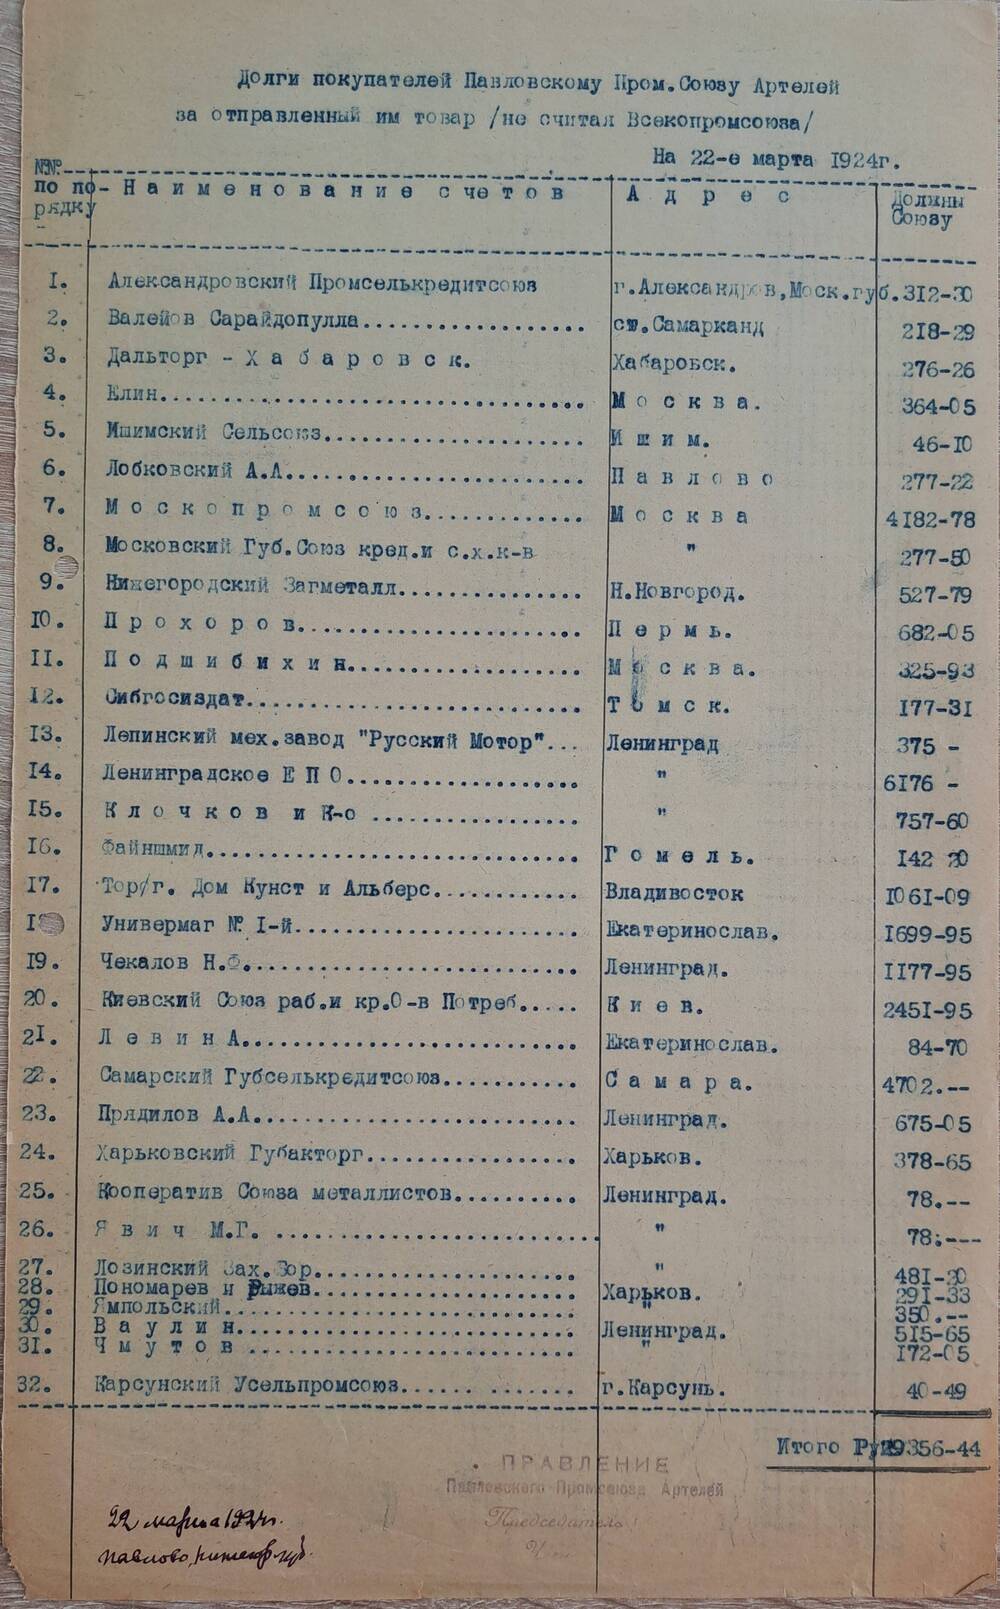 Долги покупателей Павловскому промсоюзу артелей за отправленный им товар на 22 марта 1924 г.